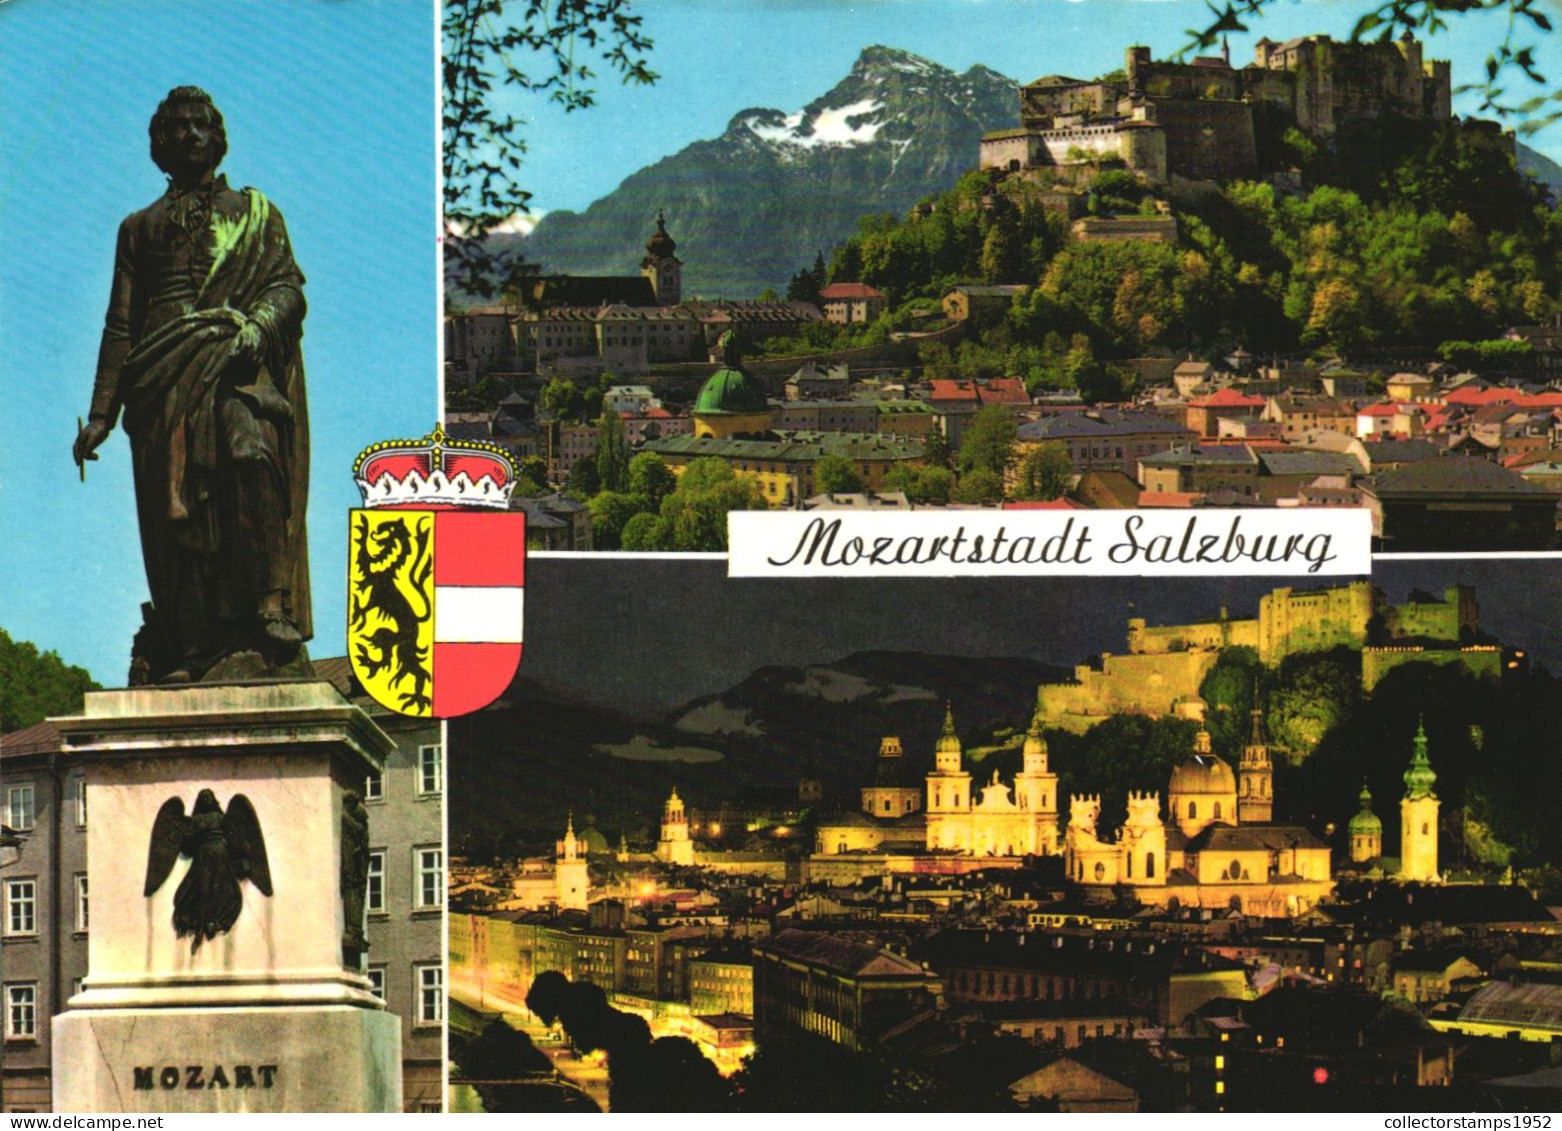 SALZBURG, MULTIPLE VIEWS, STATUE, MOZART, EMBLEM, ARCHITECTURE, MOUNTAIN, CASTLE, AUSTRIA, POSTCARD - Salzburg Stadt